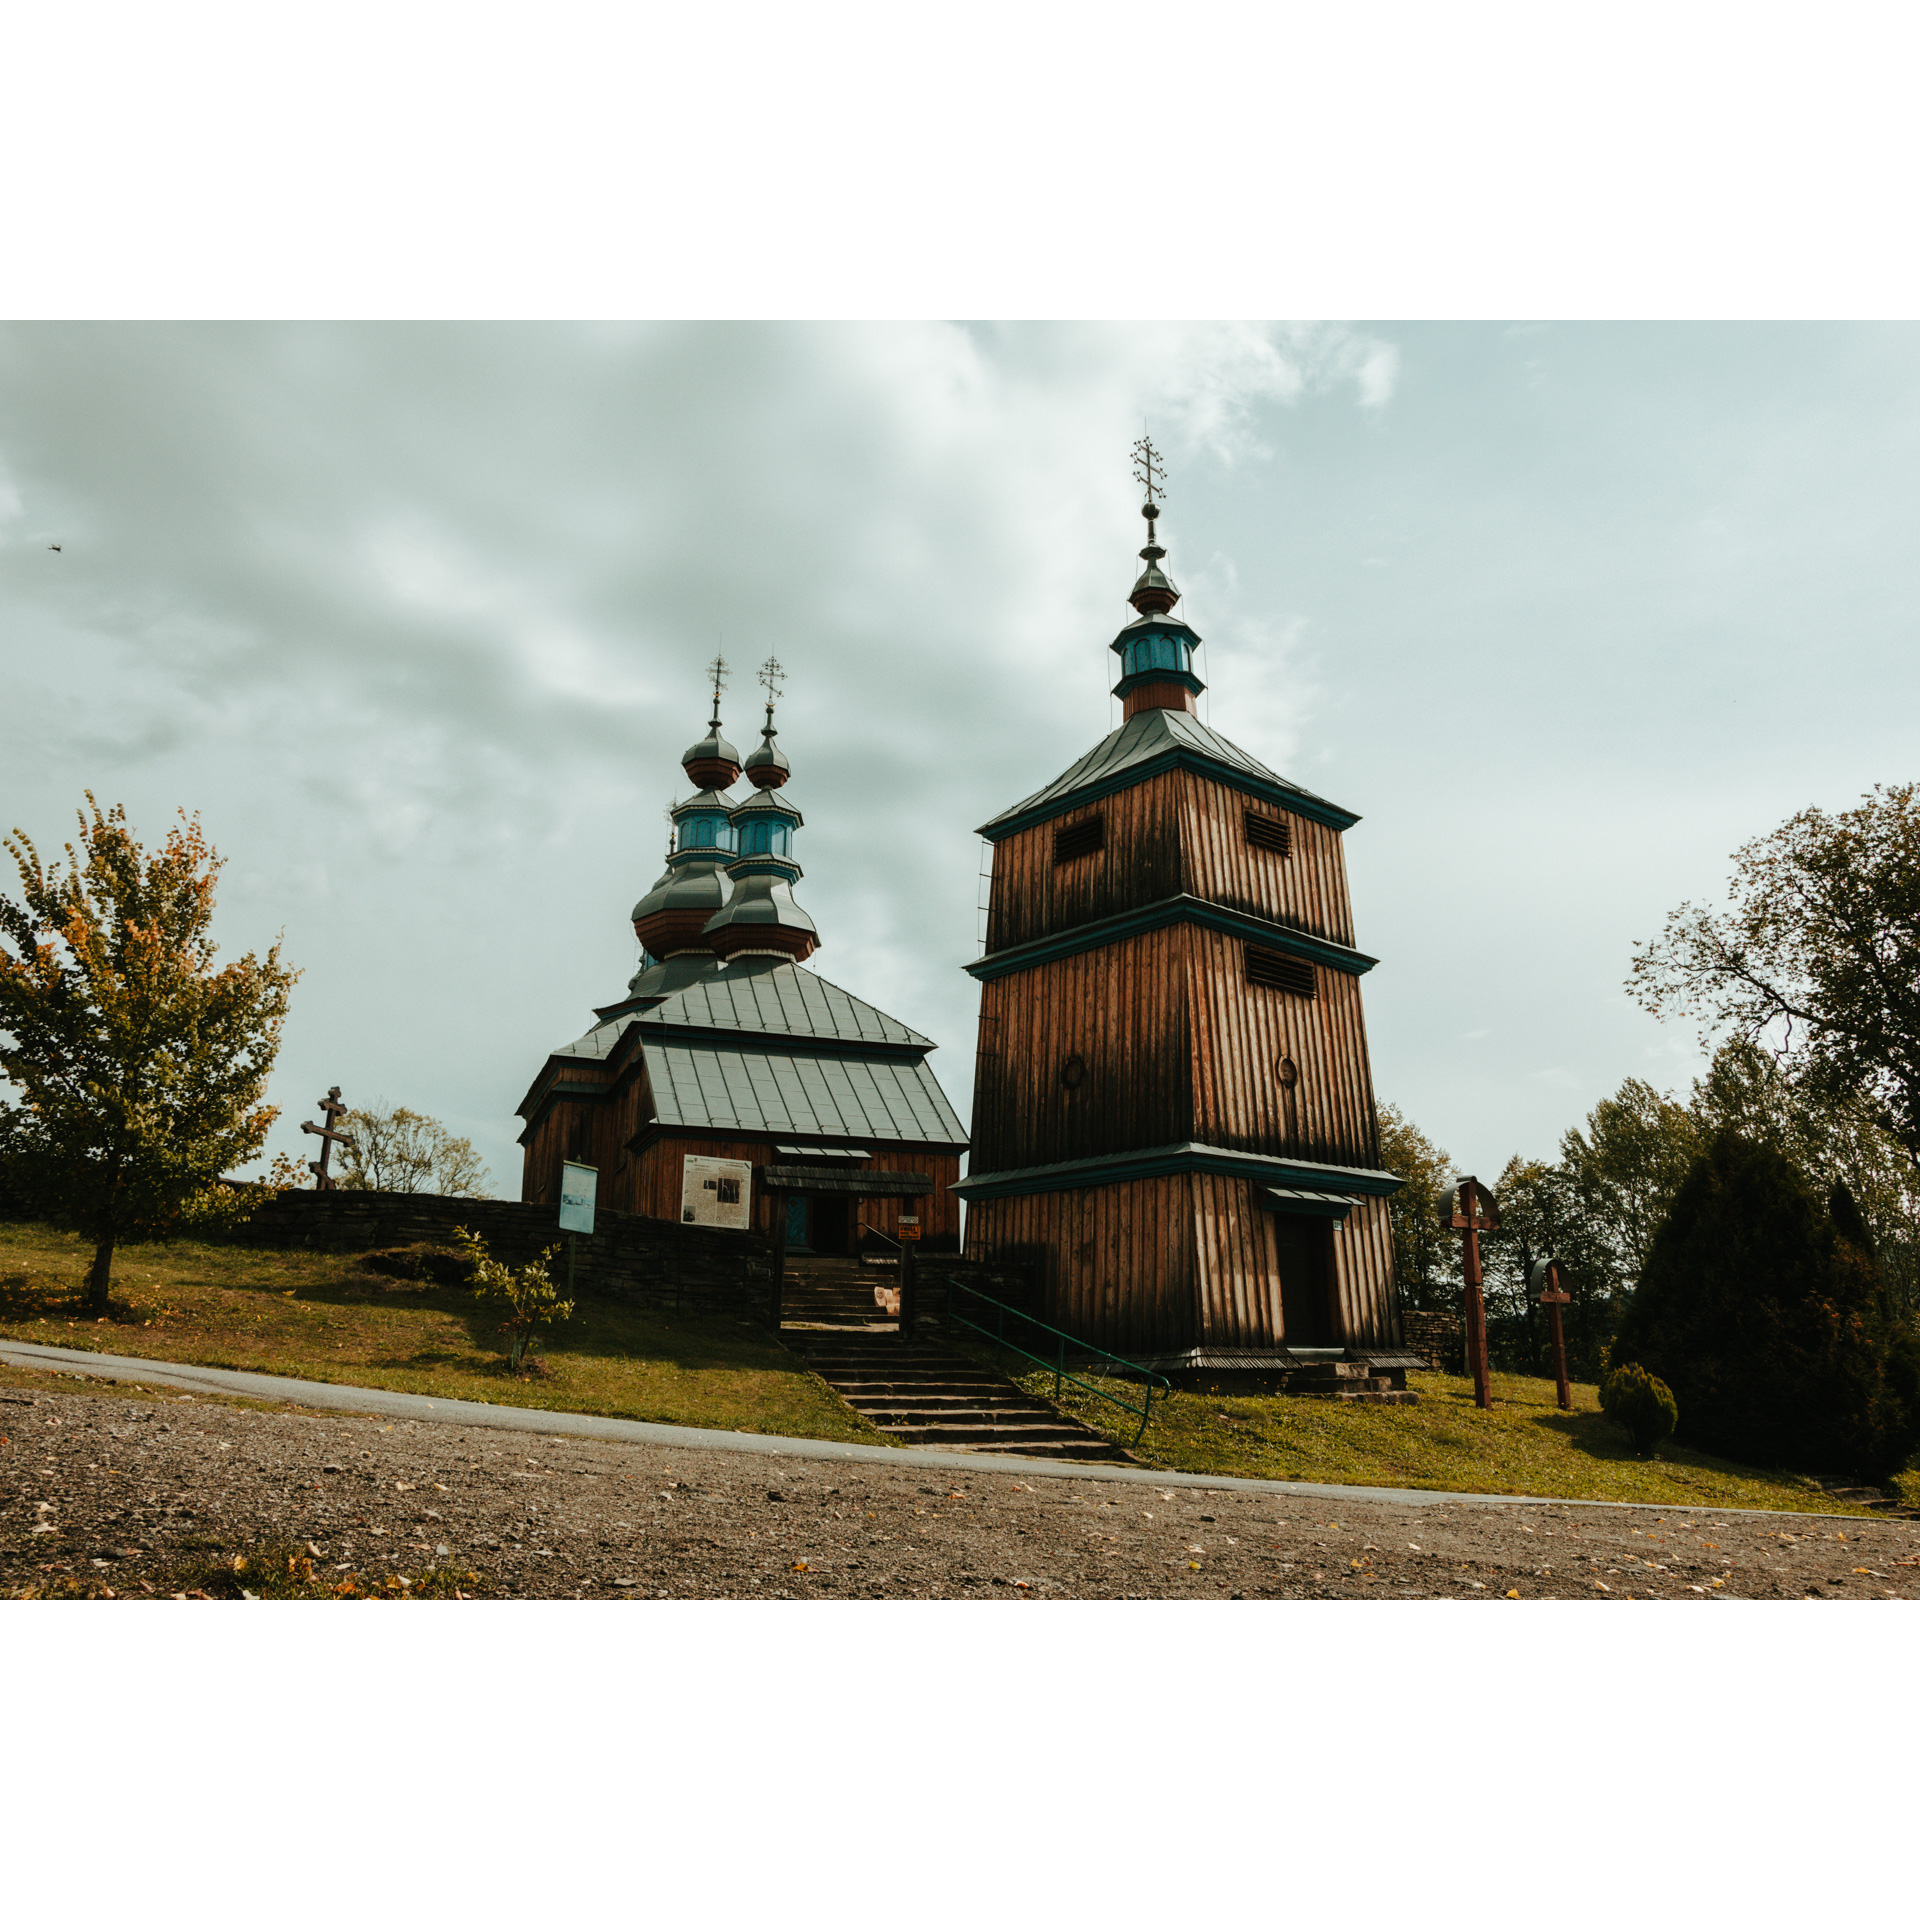 Drewniana cerkiew z dużą, wysoką dzwonnicą i kopułami, do której prowadzą kamienne schody z zieloną barierką